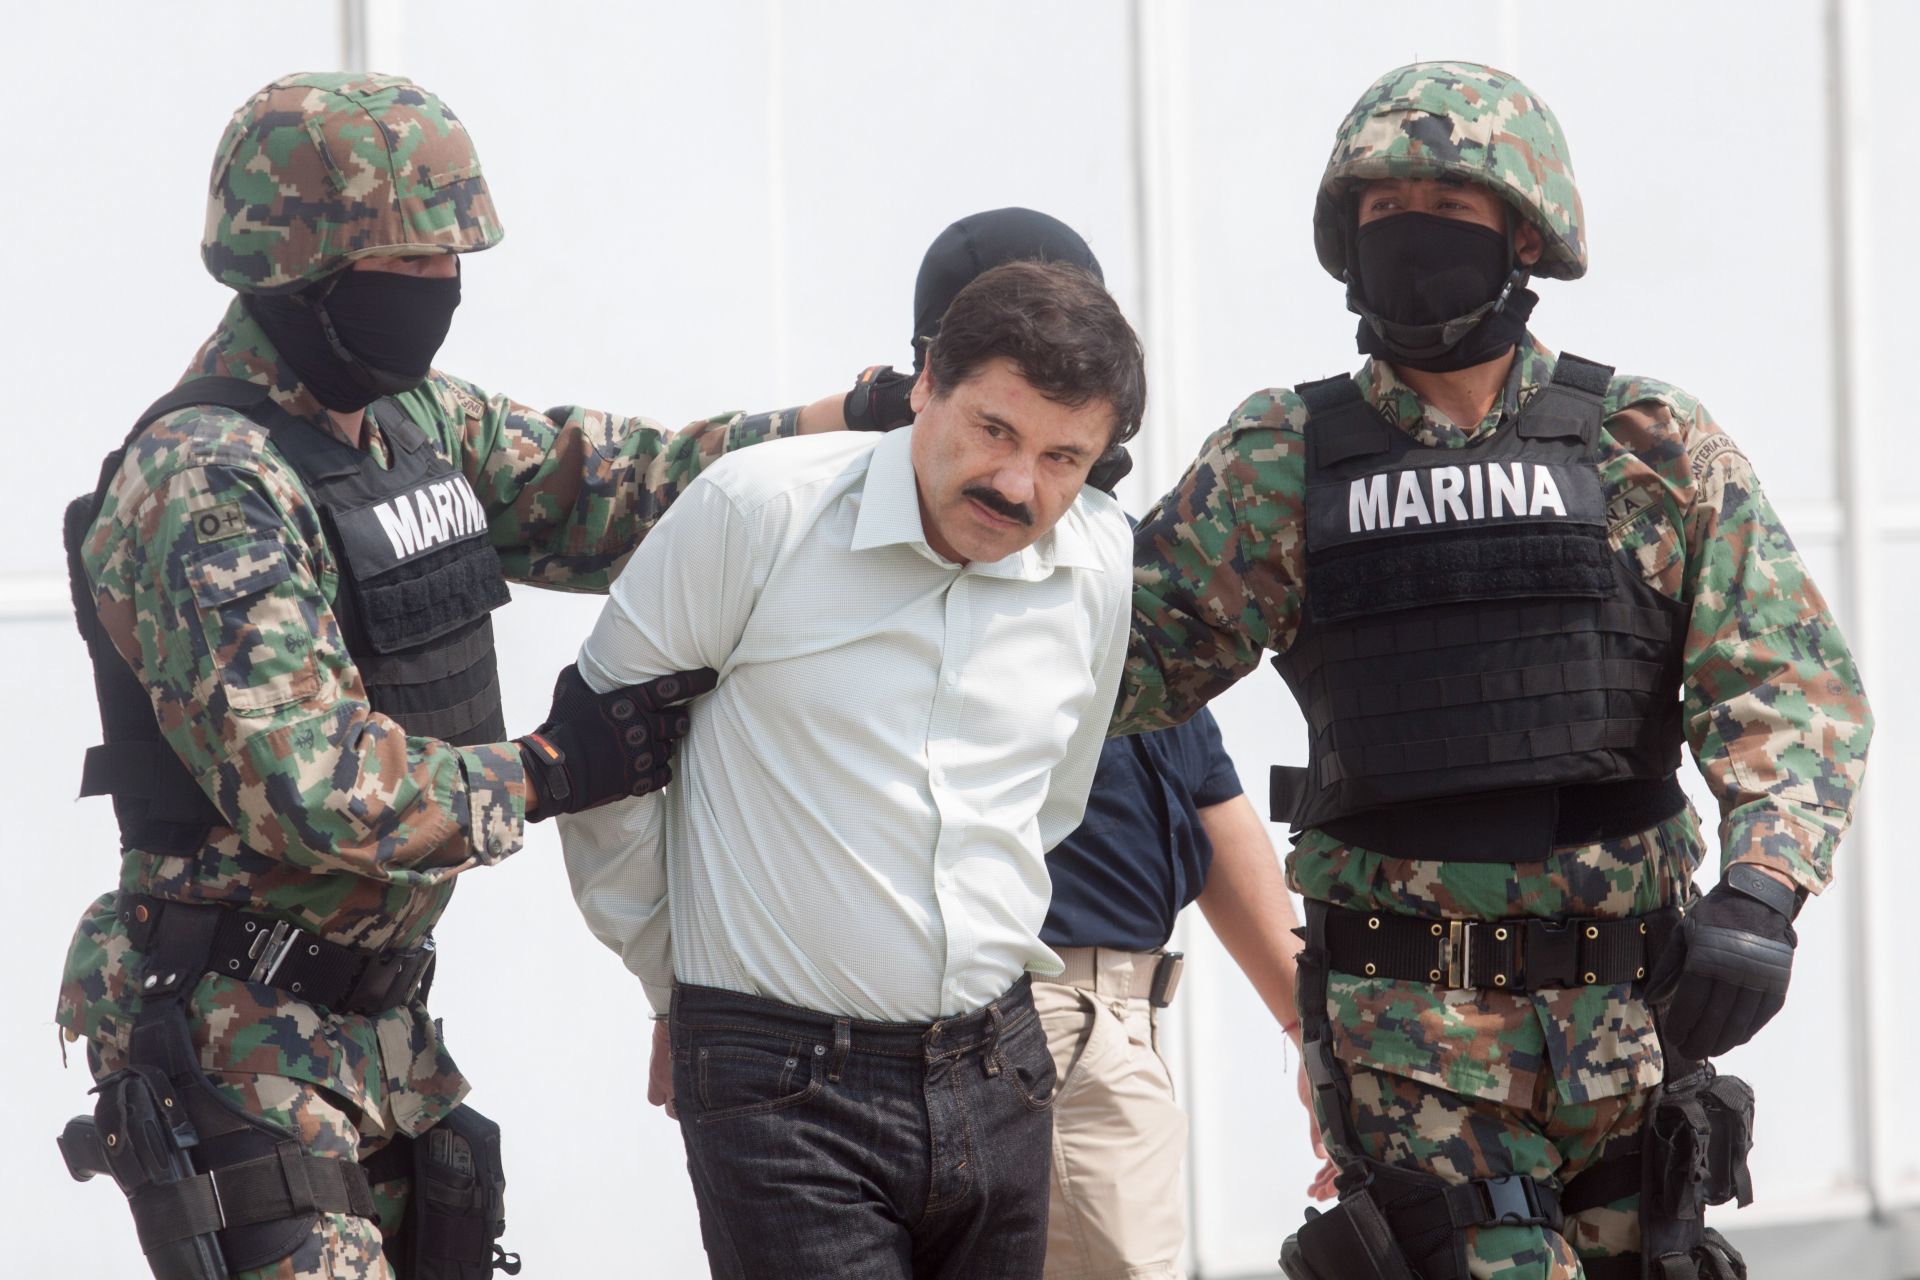 El pasado lunes 25 de octubre, los abogados de Joaquín "El Chapo" Guzmán presentaron argumentos ante una corte de apelaciones para que se anule la sentencia de cadena perpetua (Foto: Cuartoscuro.com)